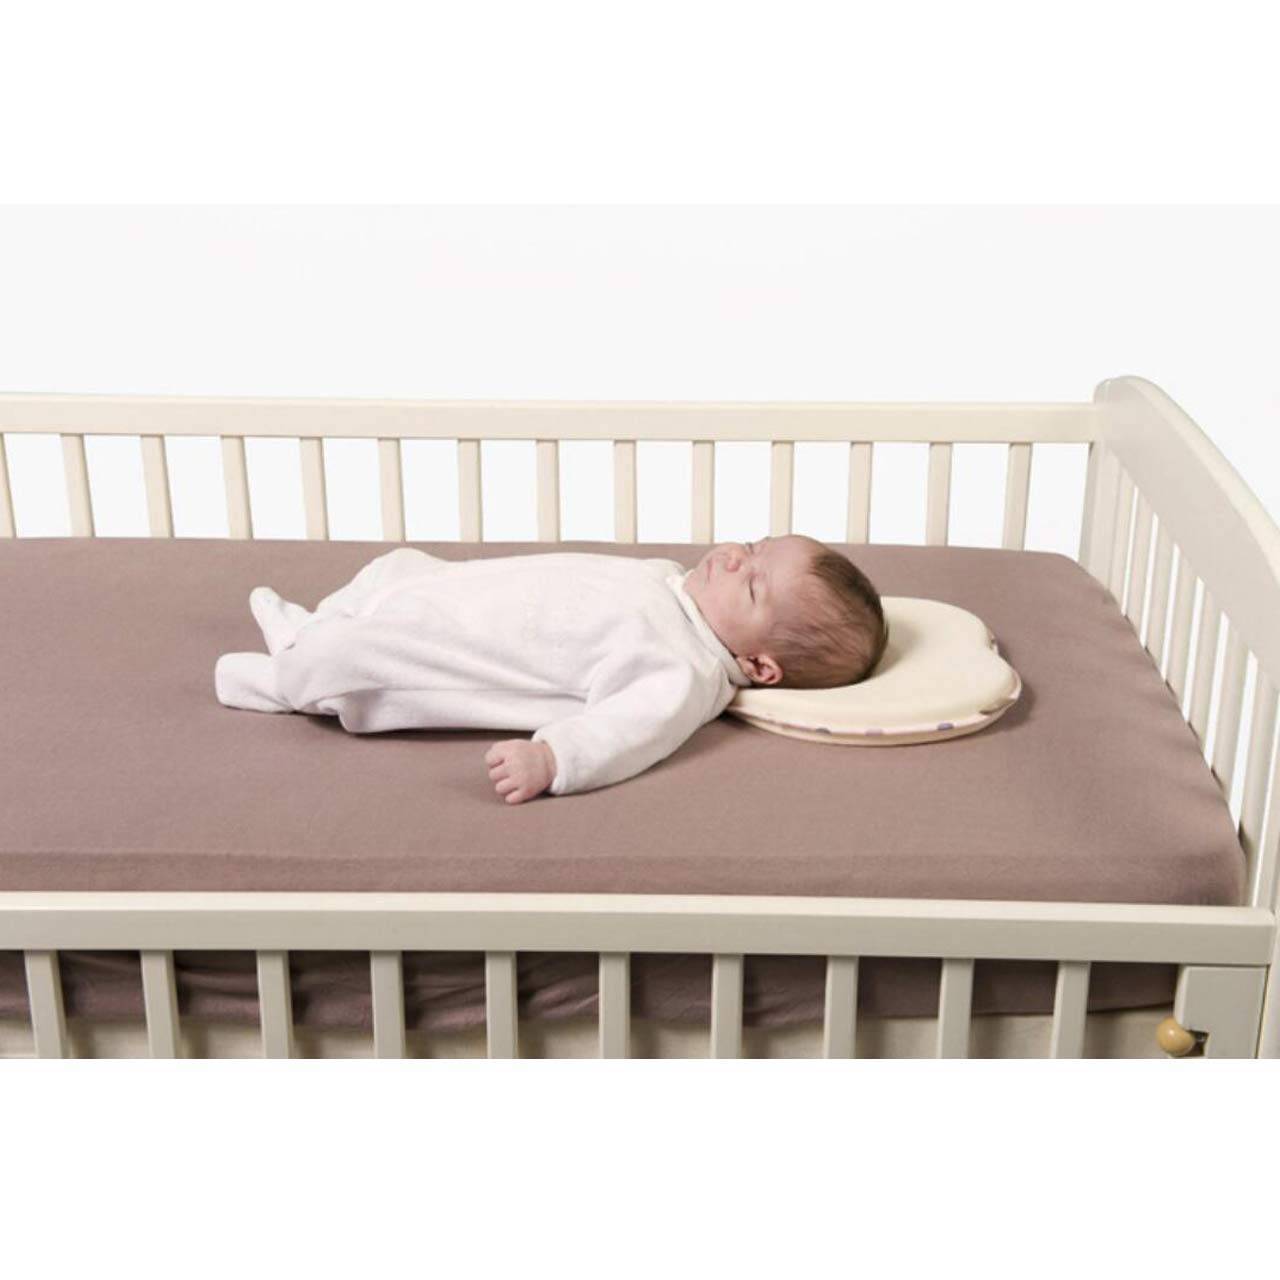 Новорожденный спать подушка. Подушка для лежания на животе для грудничков. Подушка для новорожденных лежать. Подушка позиционер для новорожденного в кроватку. Подушка под живот для новорожденных.